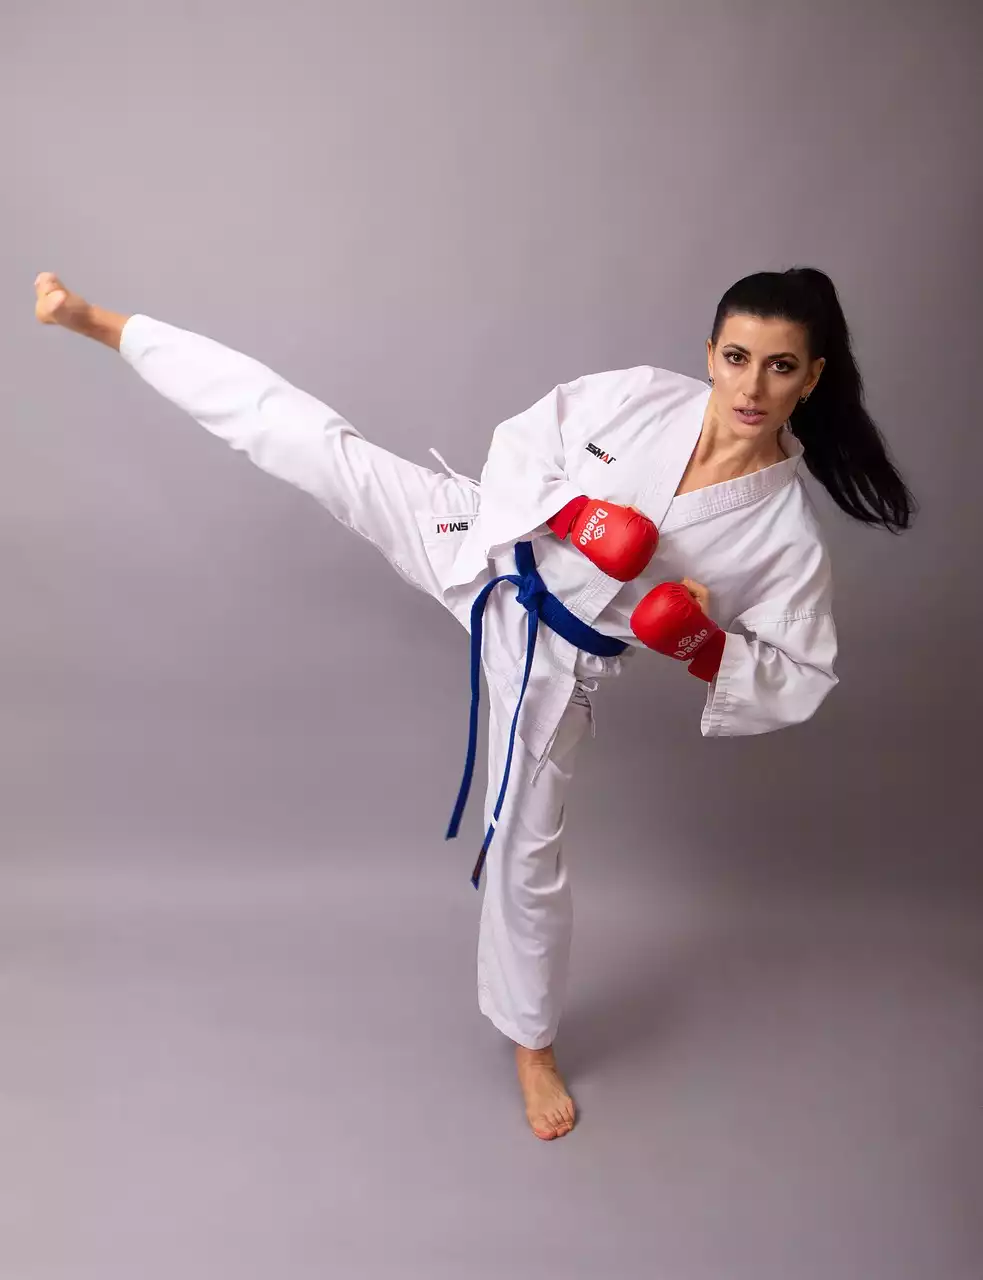 Os benefícios do treinamento cruzado em artes marciais